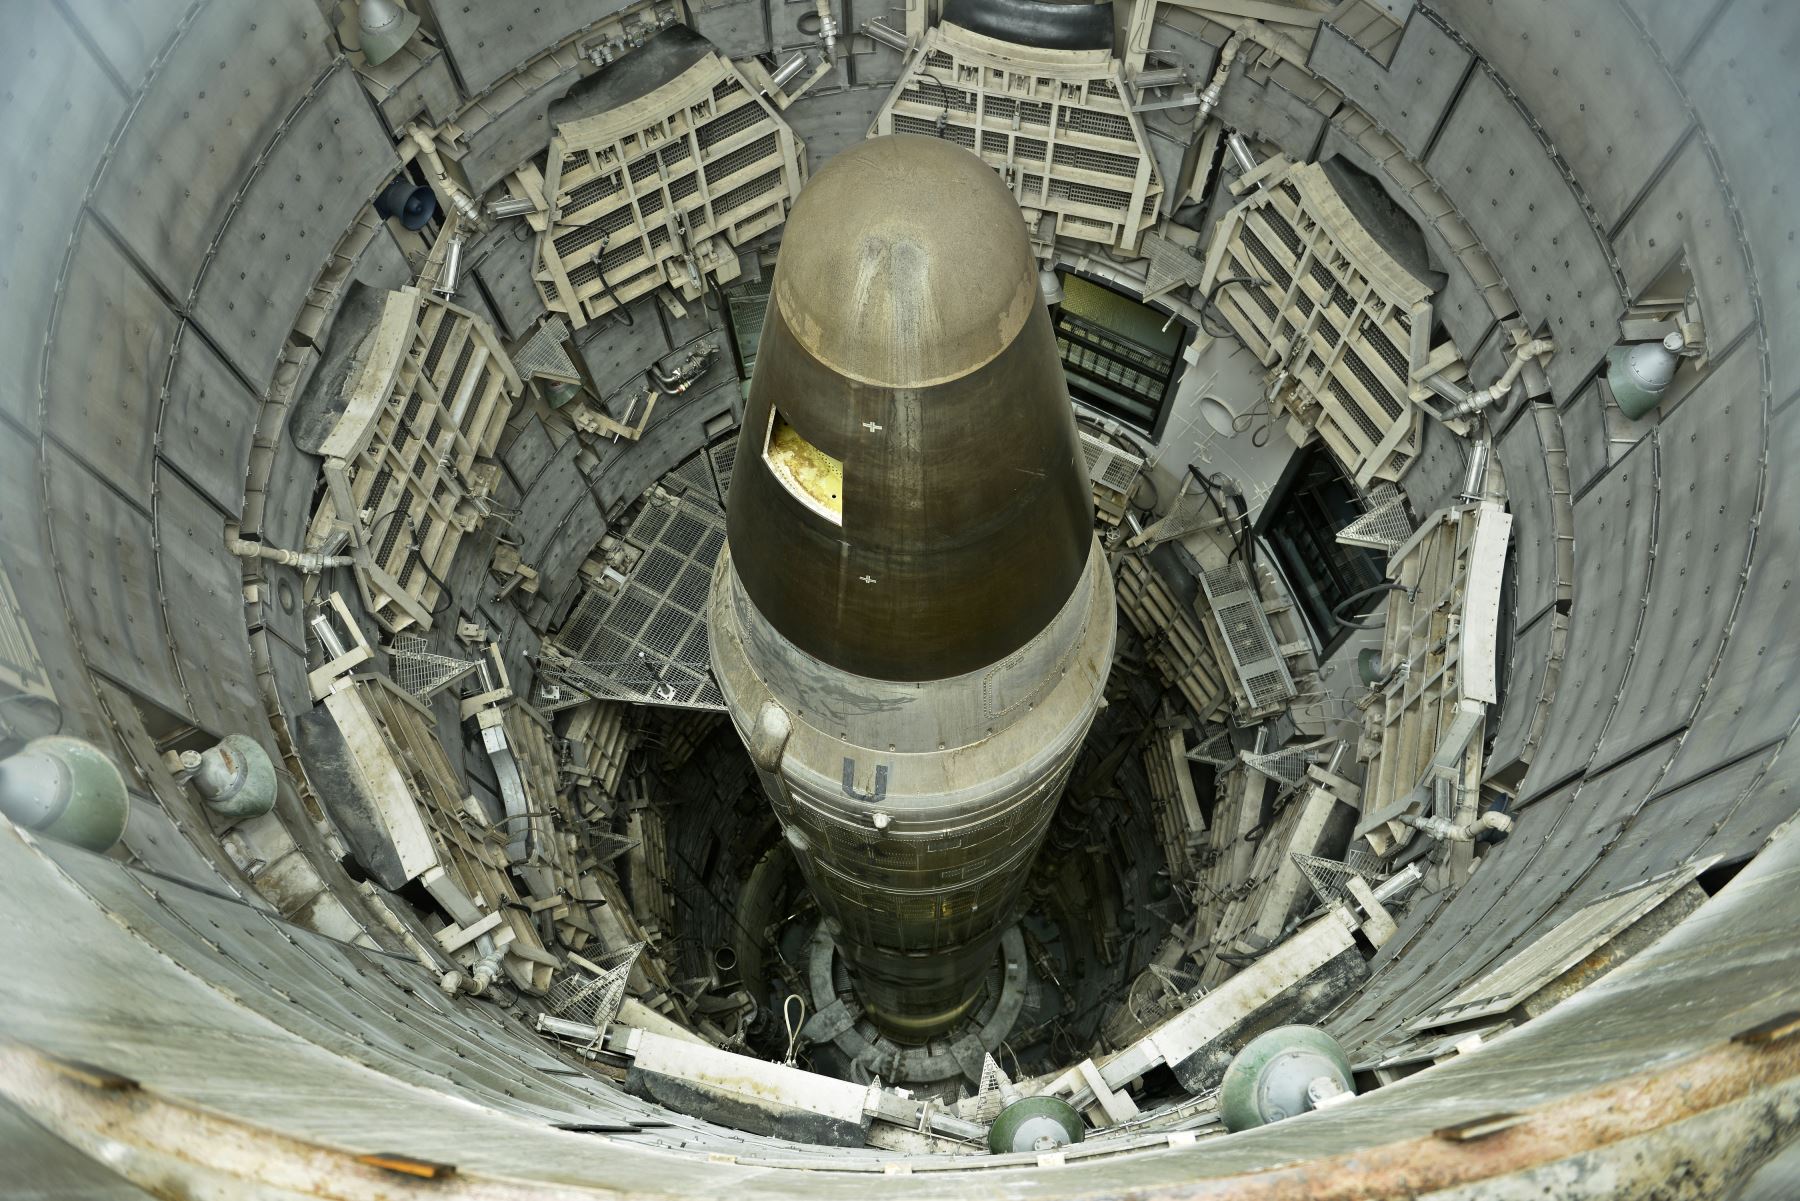 India, Pakistán, Israel y Corea del Norte tienen entre todas alrededor de 460 ojivas nucleares, según el instituto. Foto: AFP